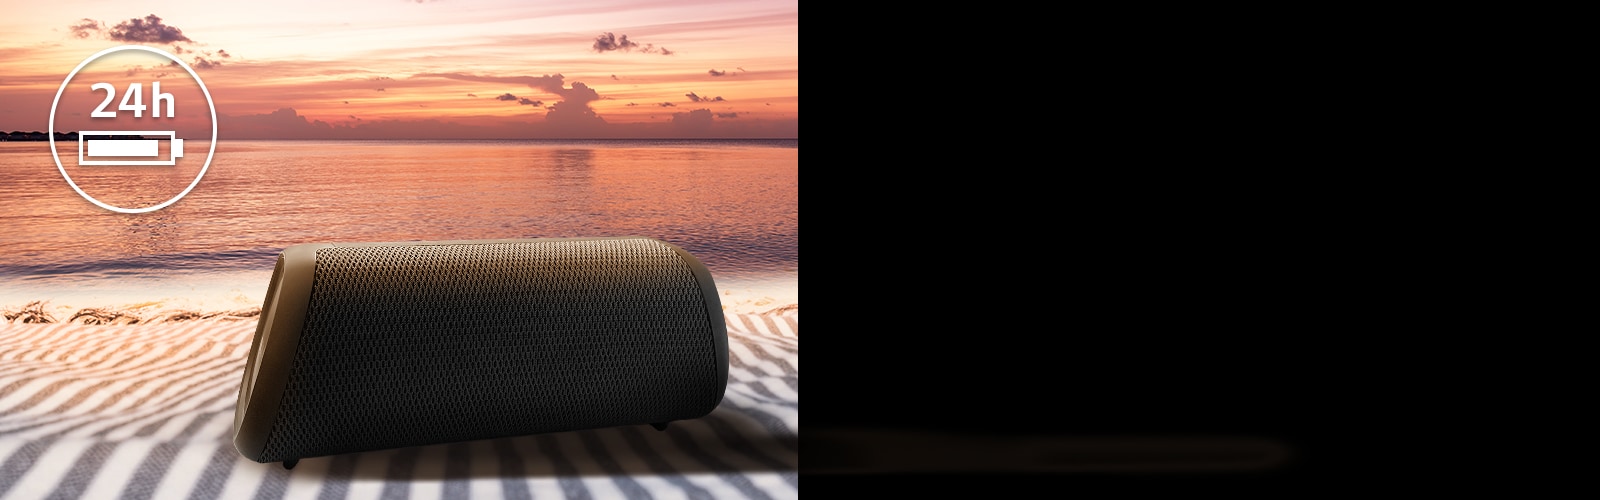 مكبر الصوت موضوع فوق منشفة الشاطئ. يظهر أمام مكبر الصوت منظر الغروب على الشاطئ لتوضيح أن بطارية هذا المنتج تدوم حتى 24 ساعة.